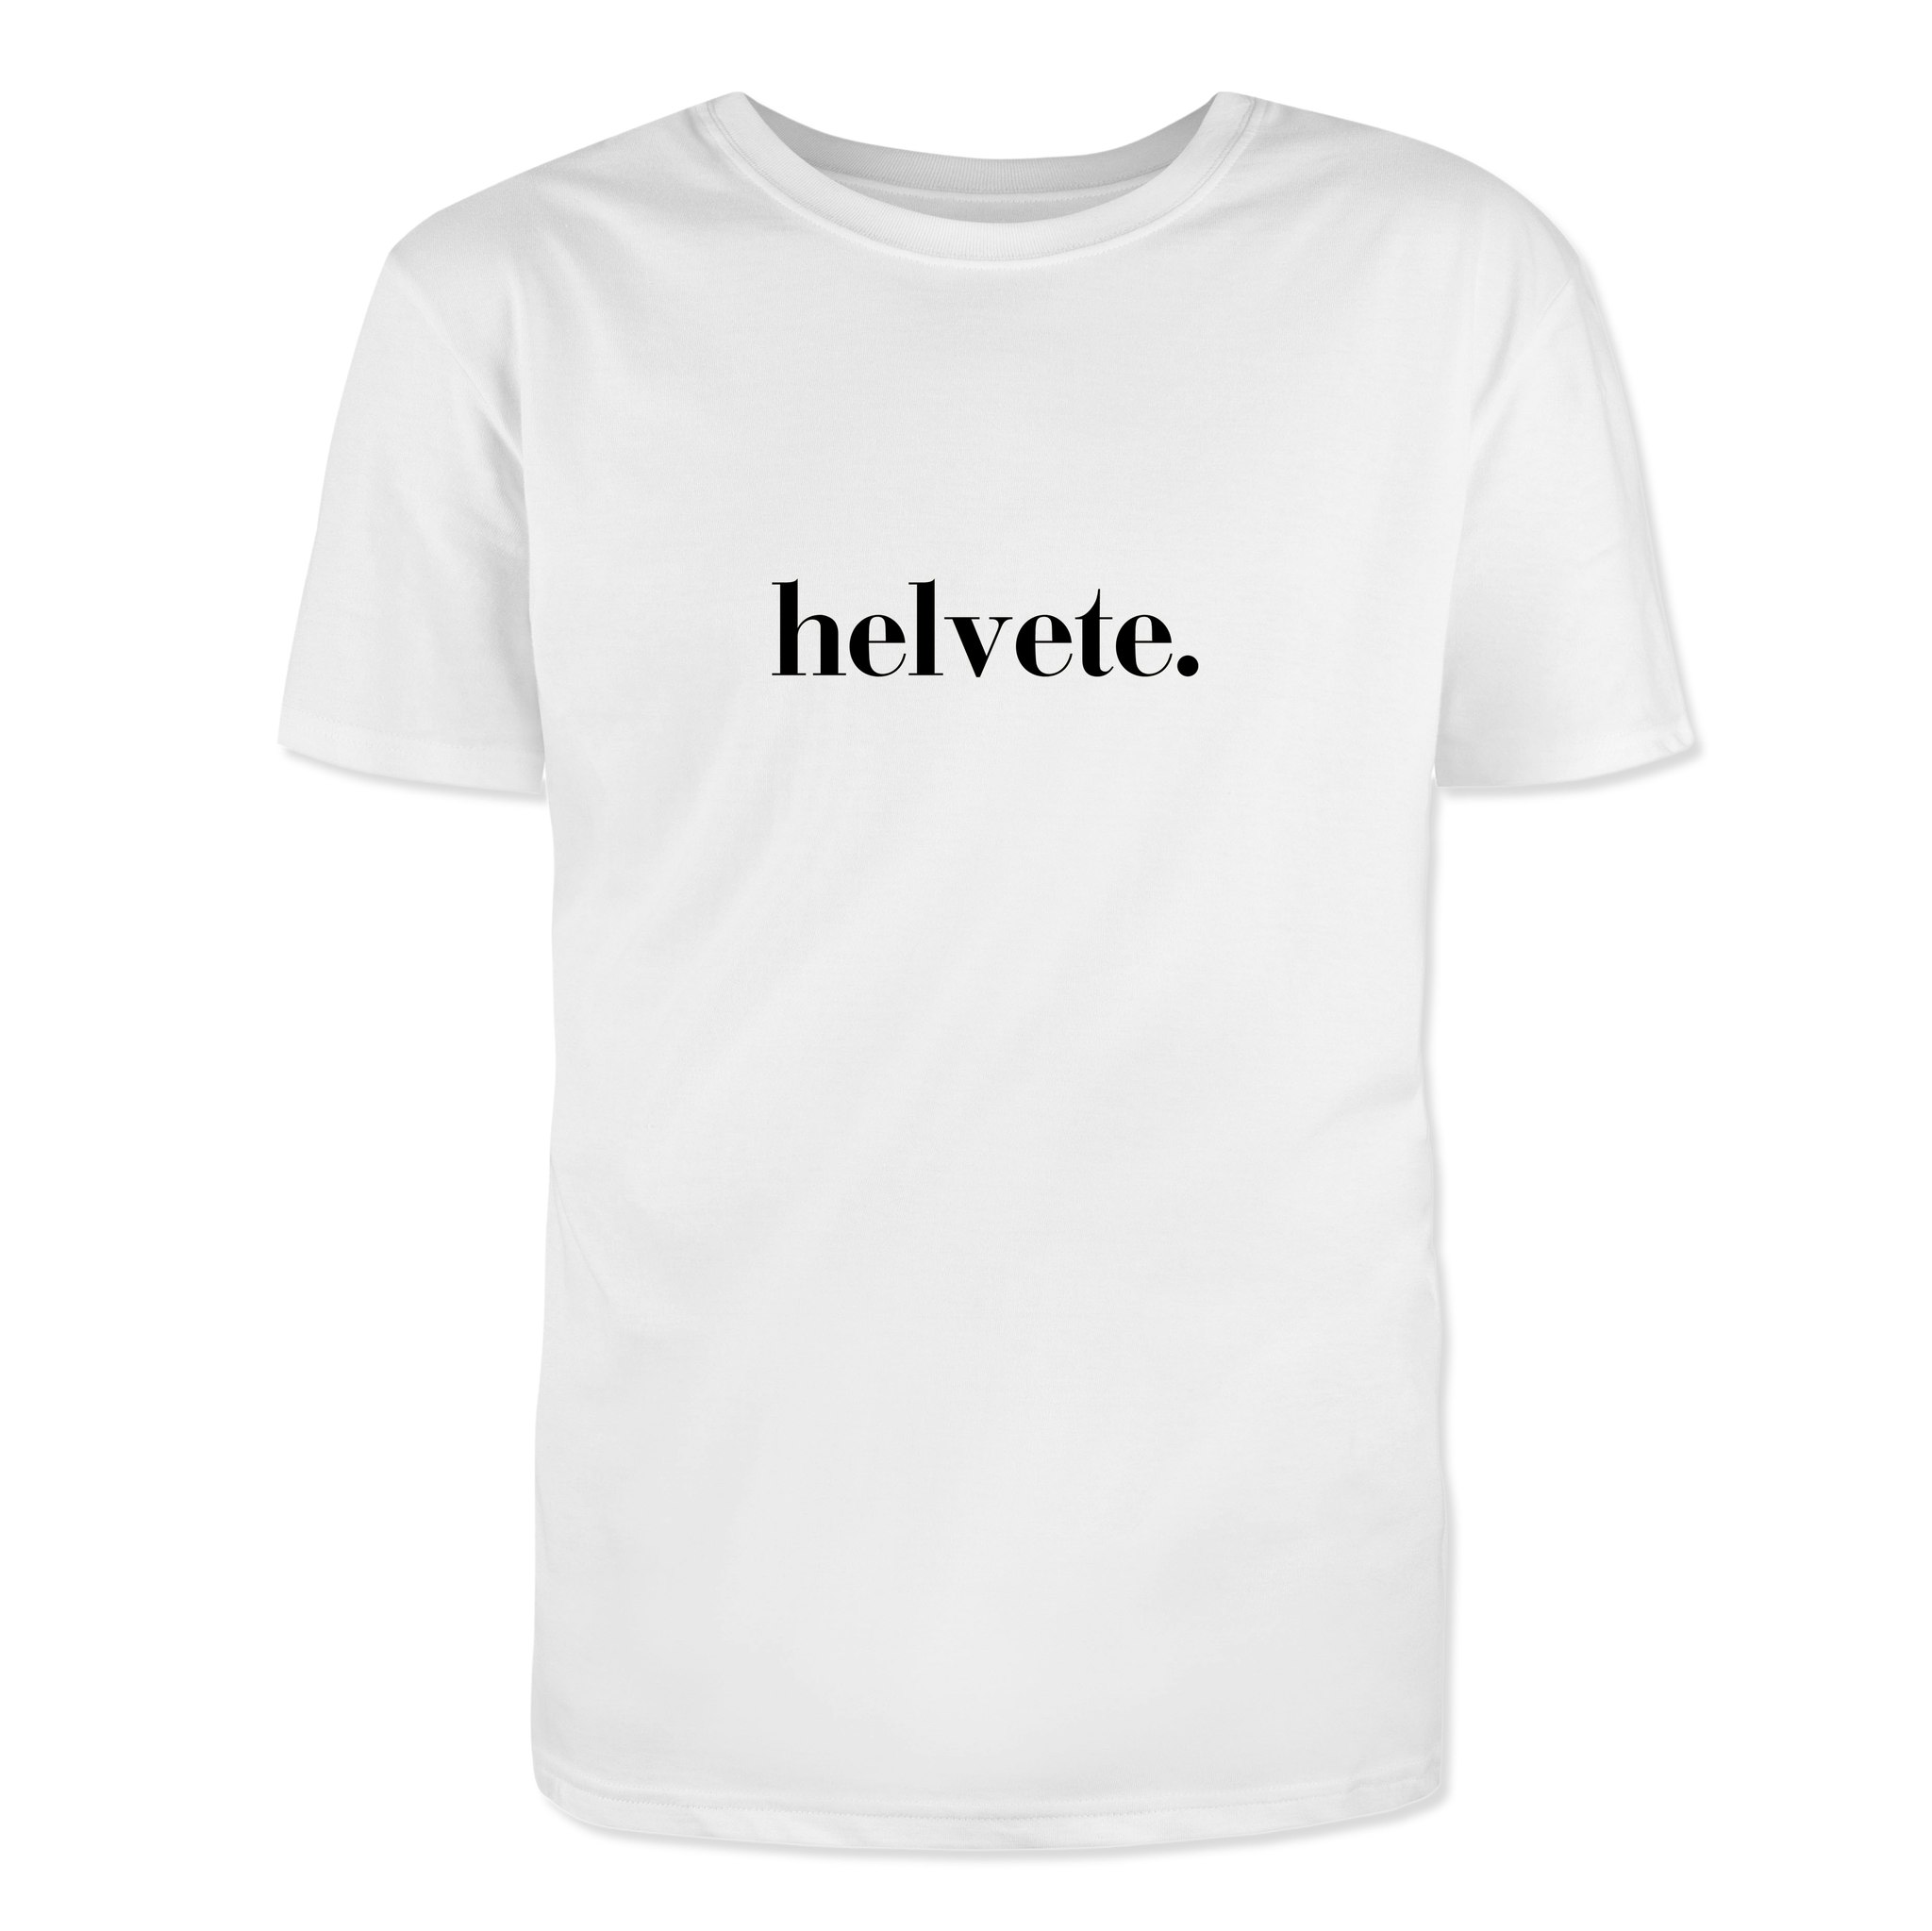 T-Shirt - Helvete